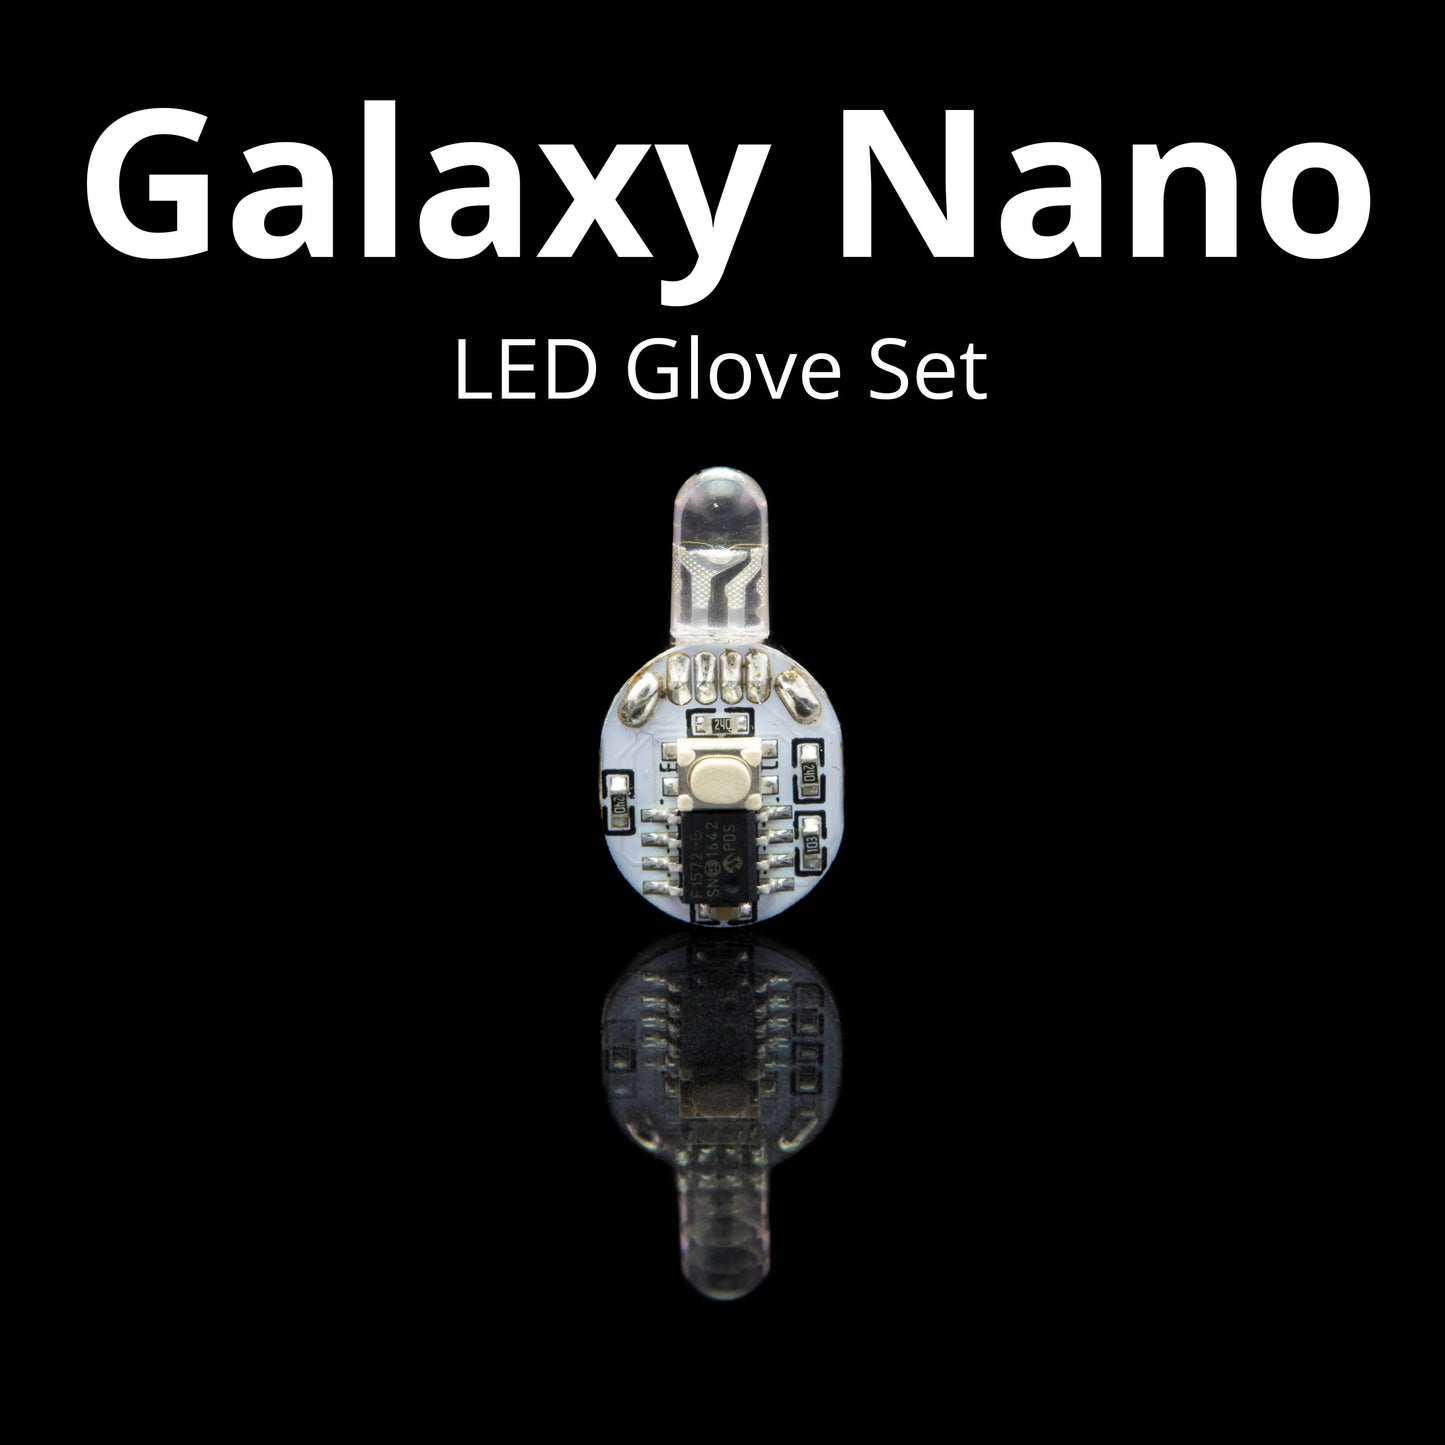 Galaxy Nano LED Glove Set V2